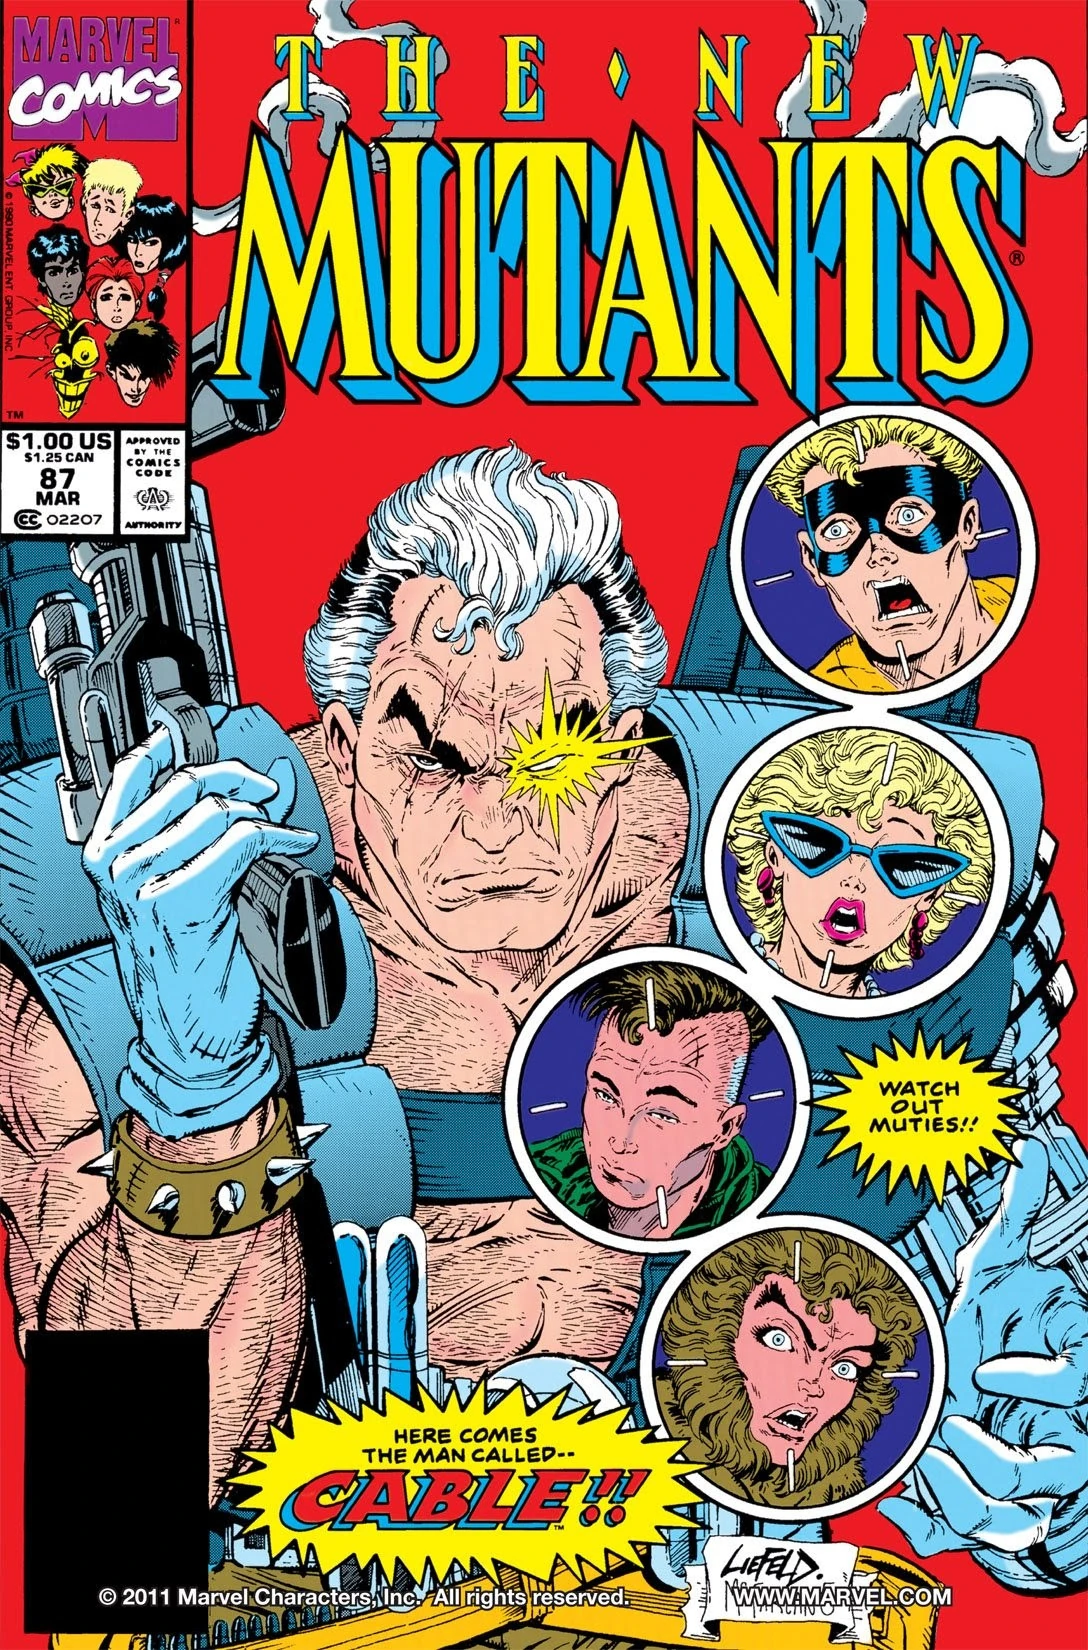 New Mutants DOESN'T Get New Release Date Despite Disney Slate Change